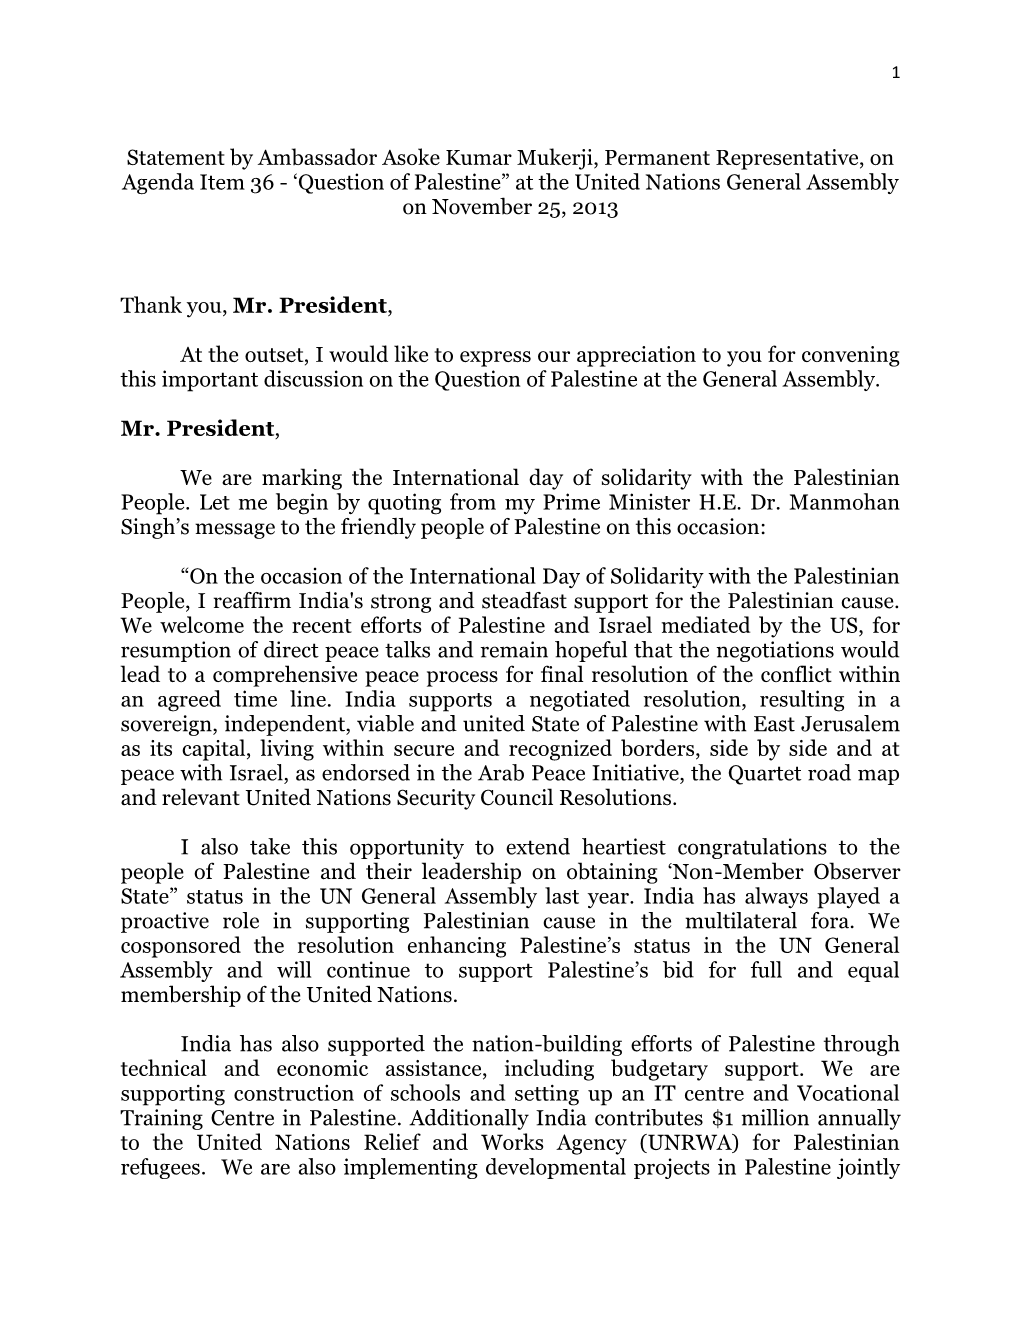 Statement by Ambassador Asoke Kumar Mukerji, Permanent